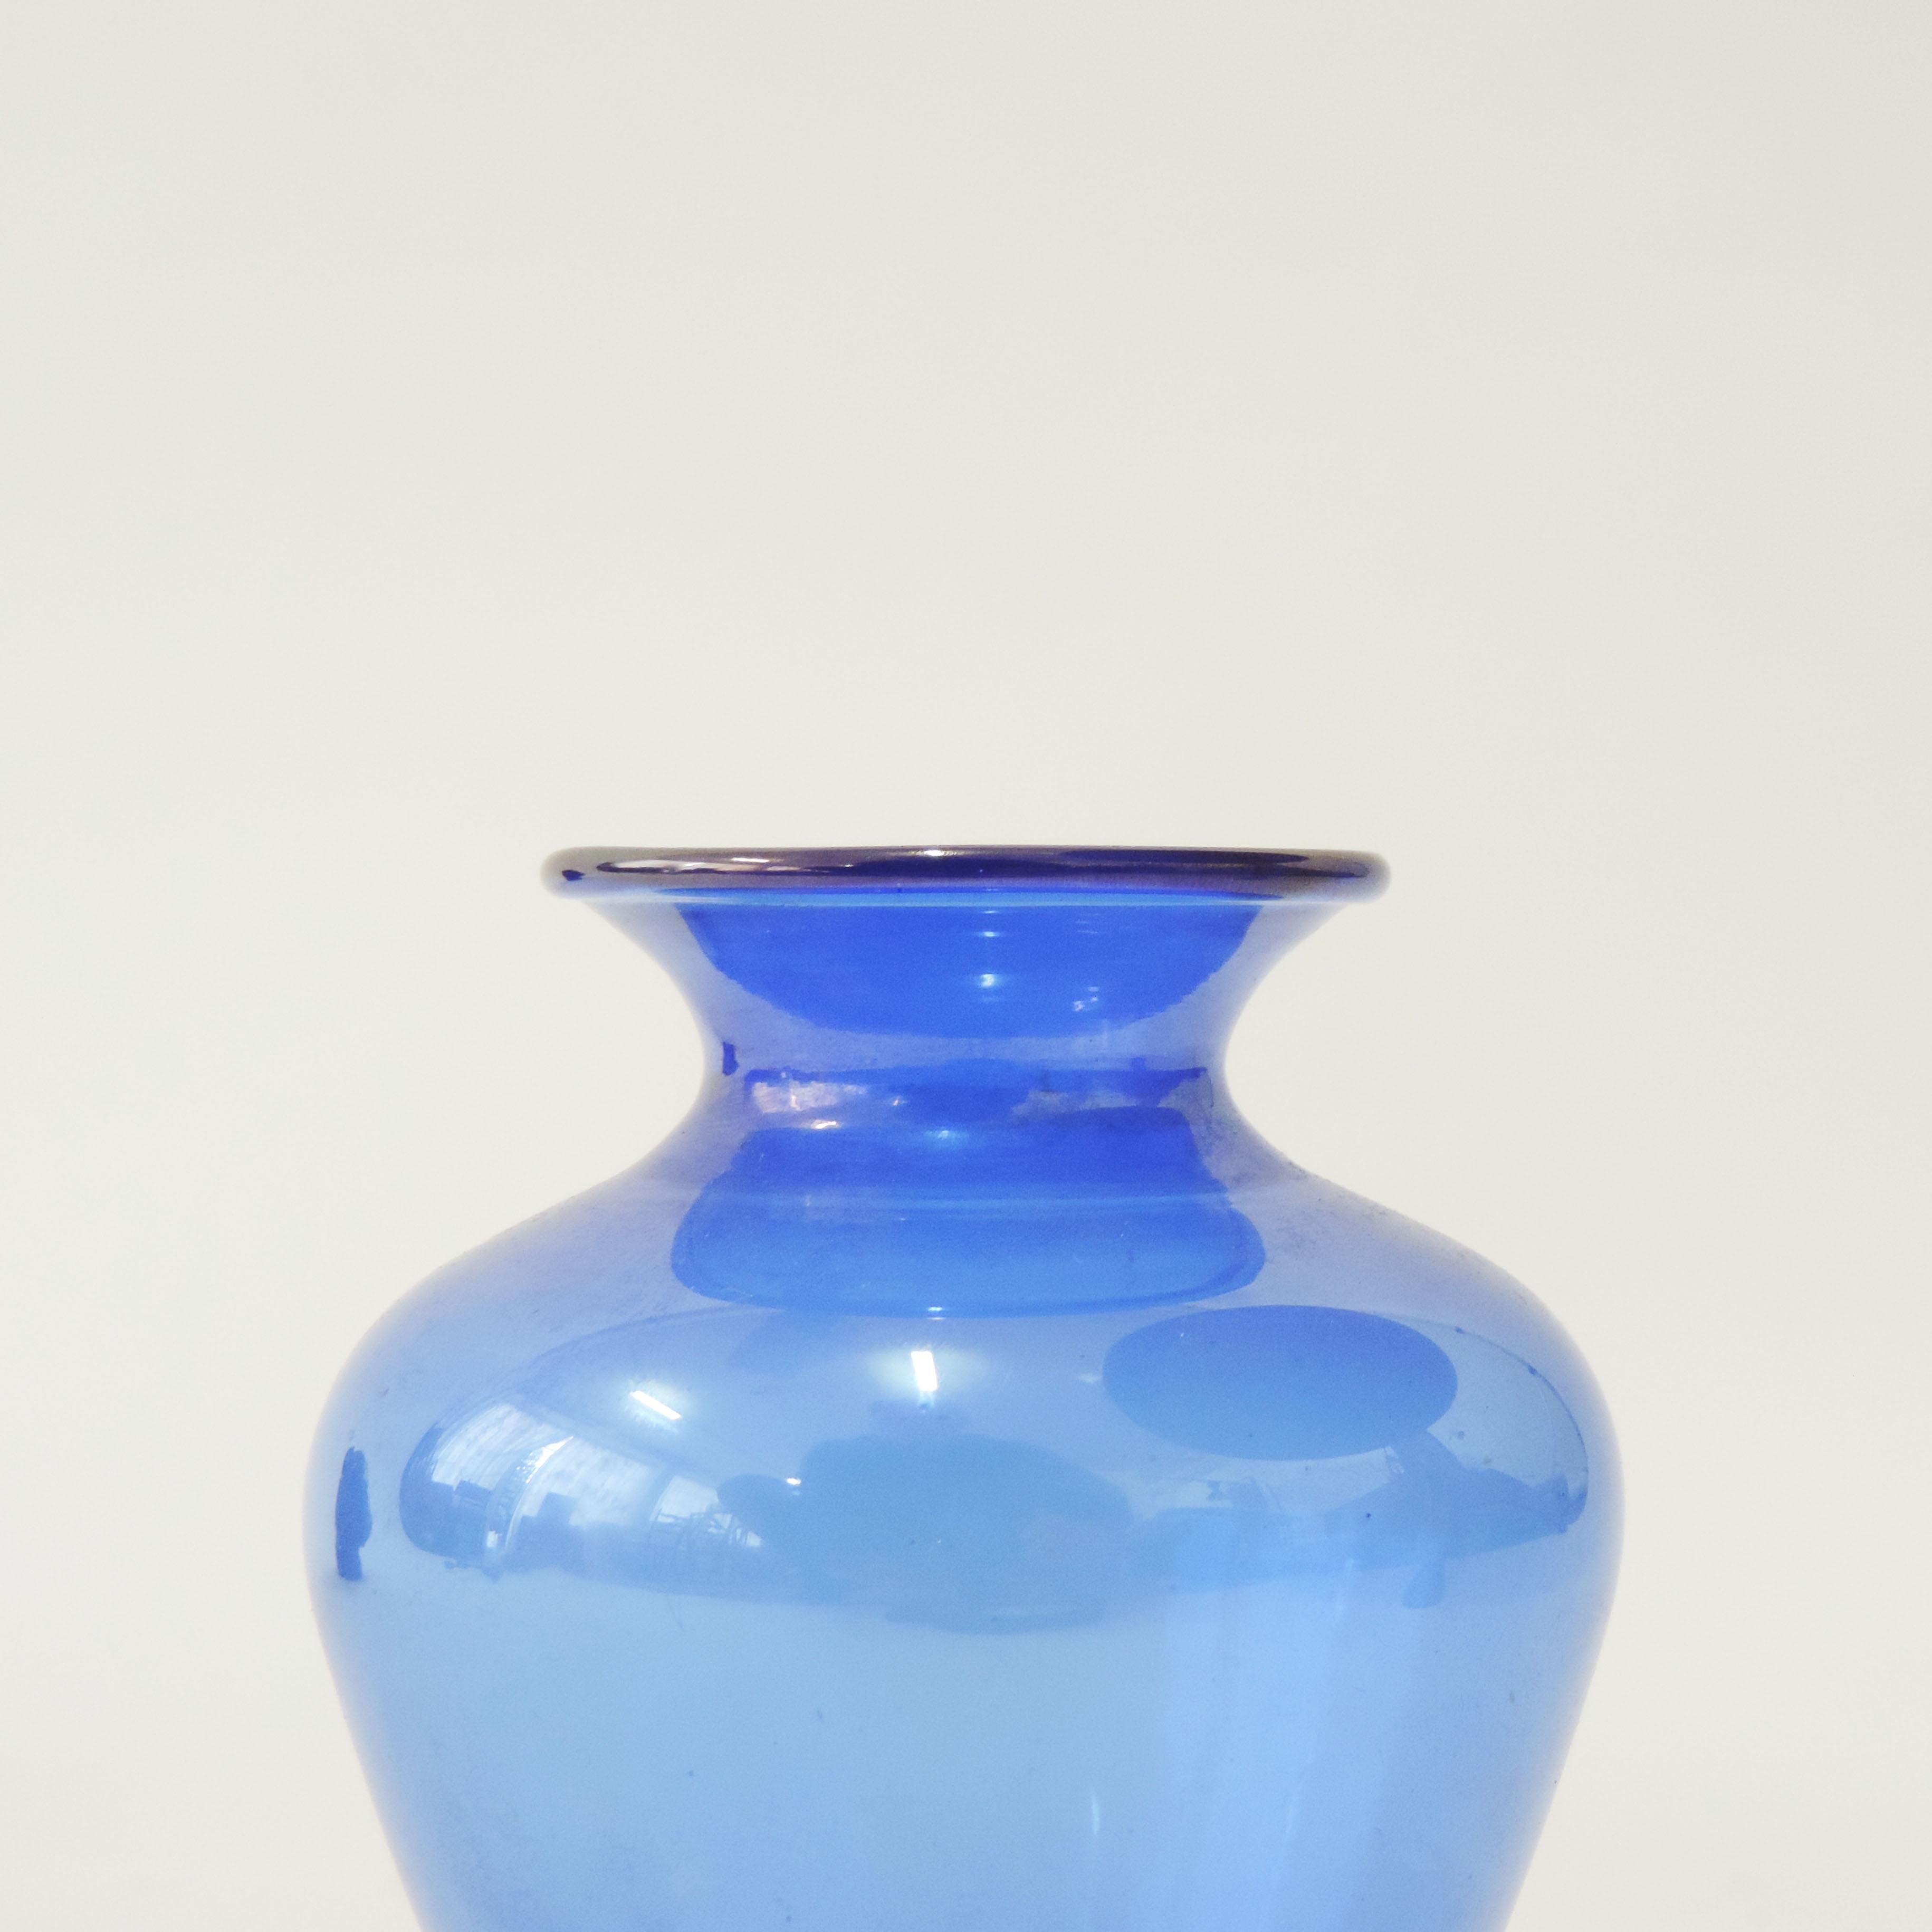 M.V.M Cappellin Vase en verre de Murano Modèle n° 5383 en bleu, Italie, années 1920
Signé MVM Cappellin Murano.